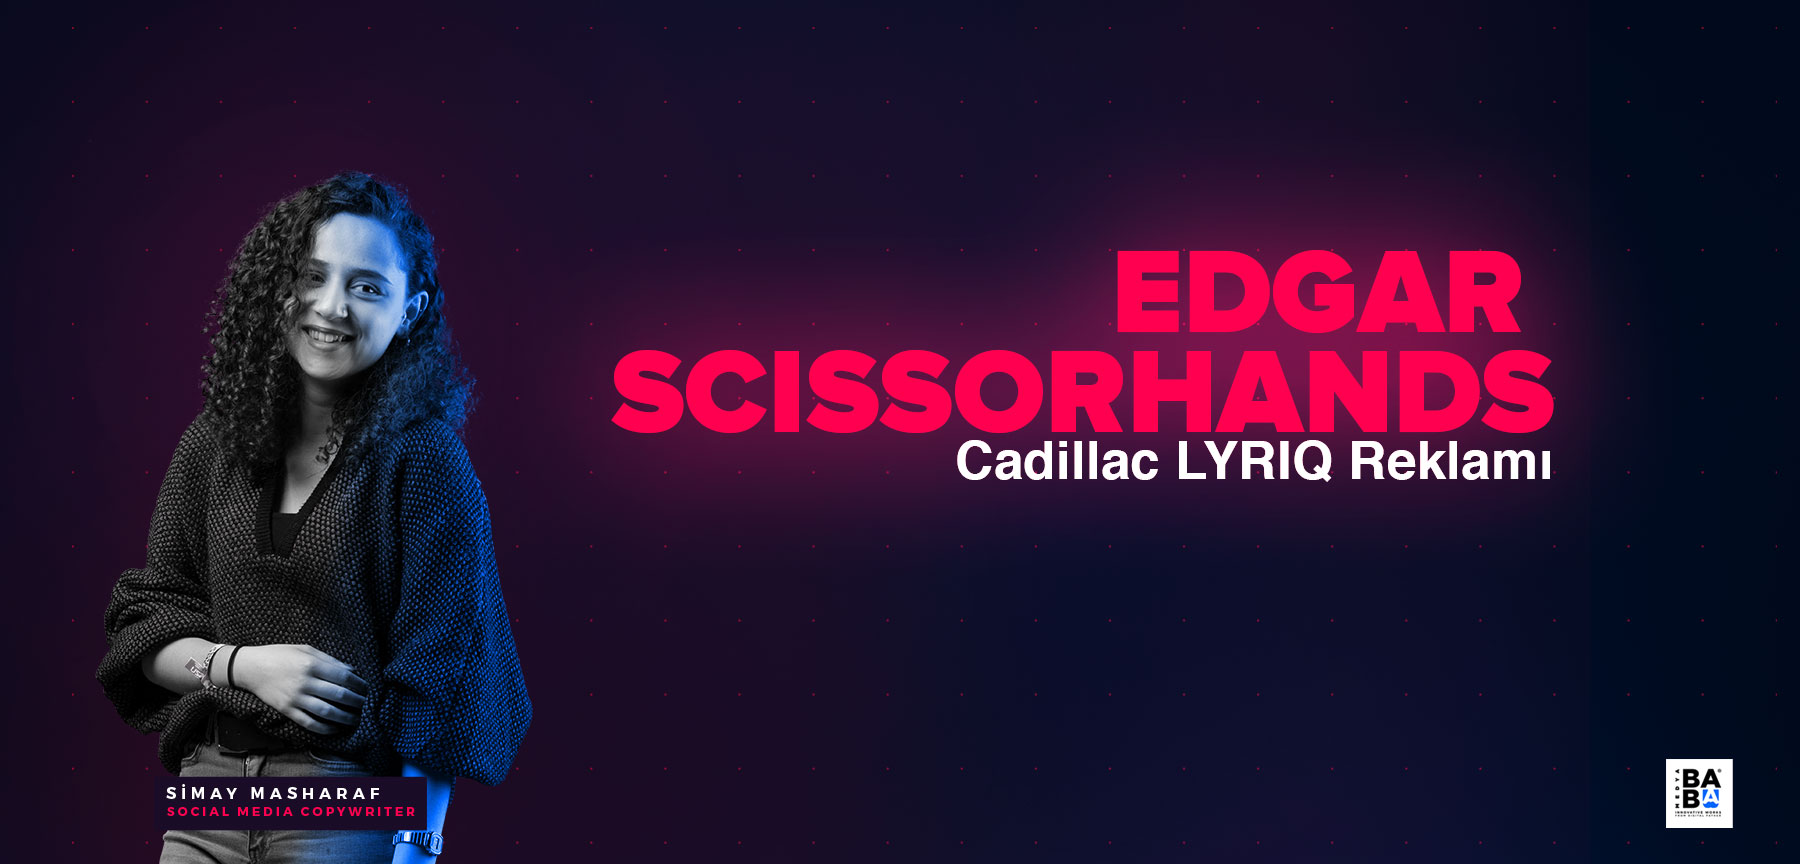 Cadillac LYRIQ reklamındaki Edward değil, Edgar Scissorhands